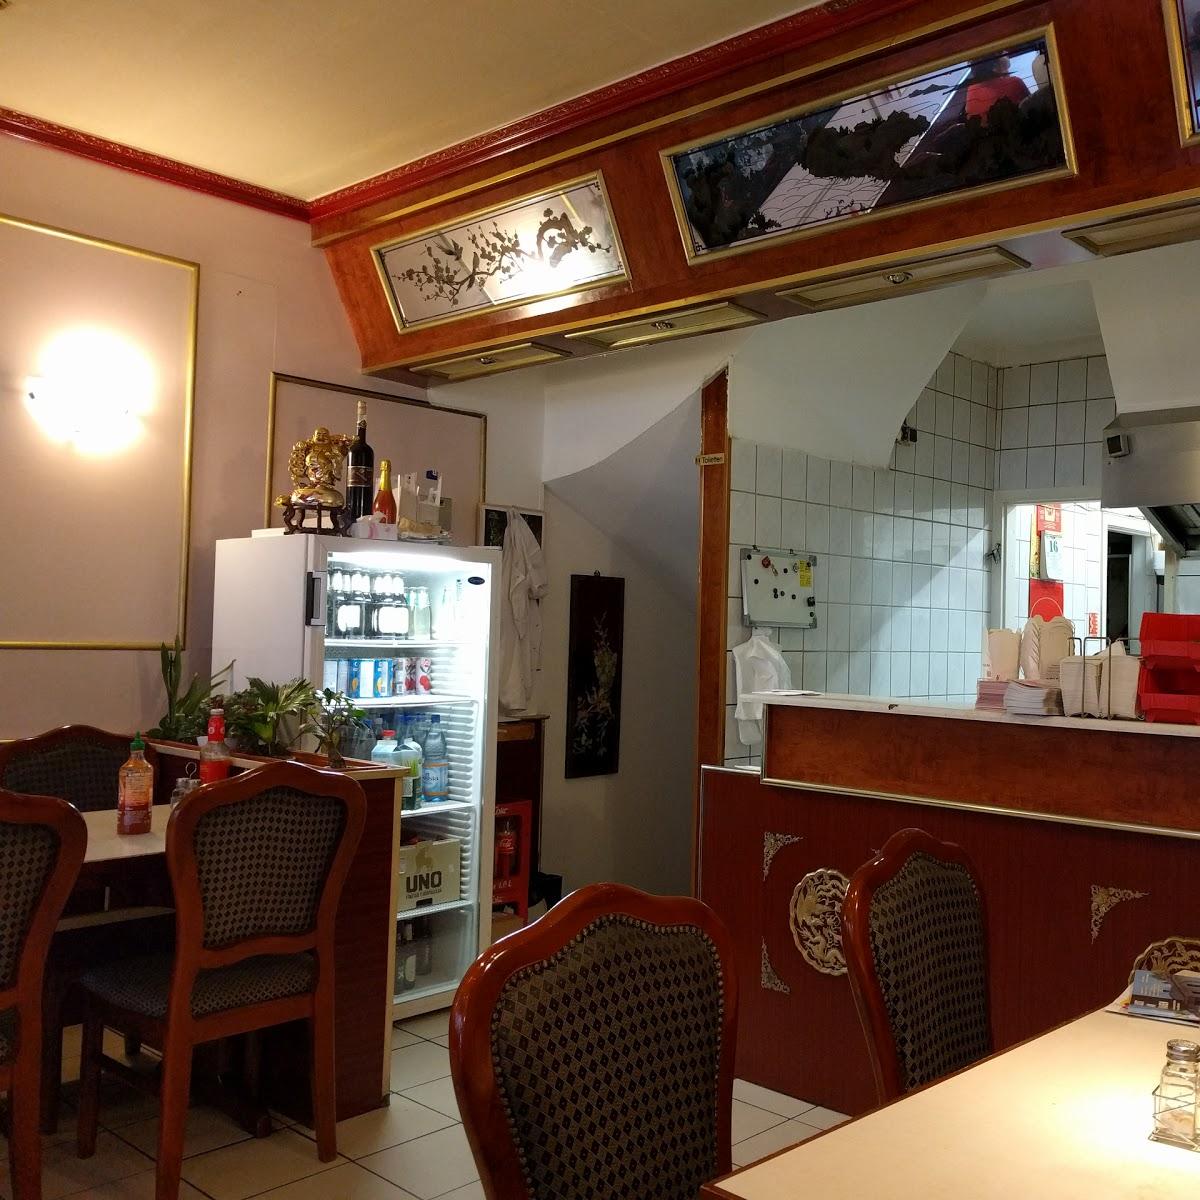 Restaurant "Asia Bistro" in Limburg an der Lahn